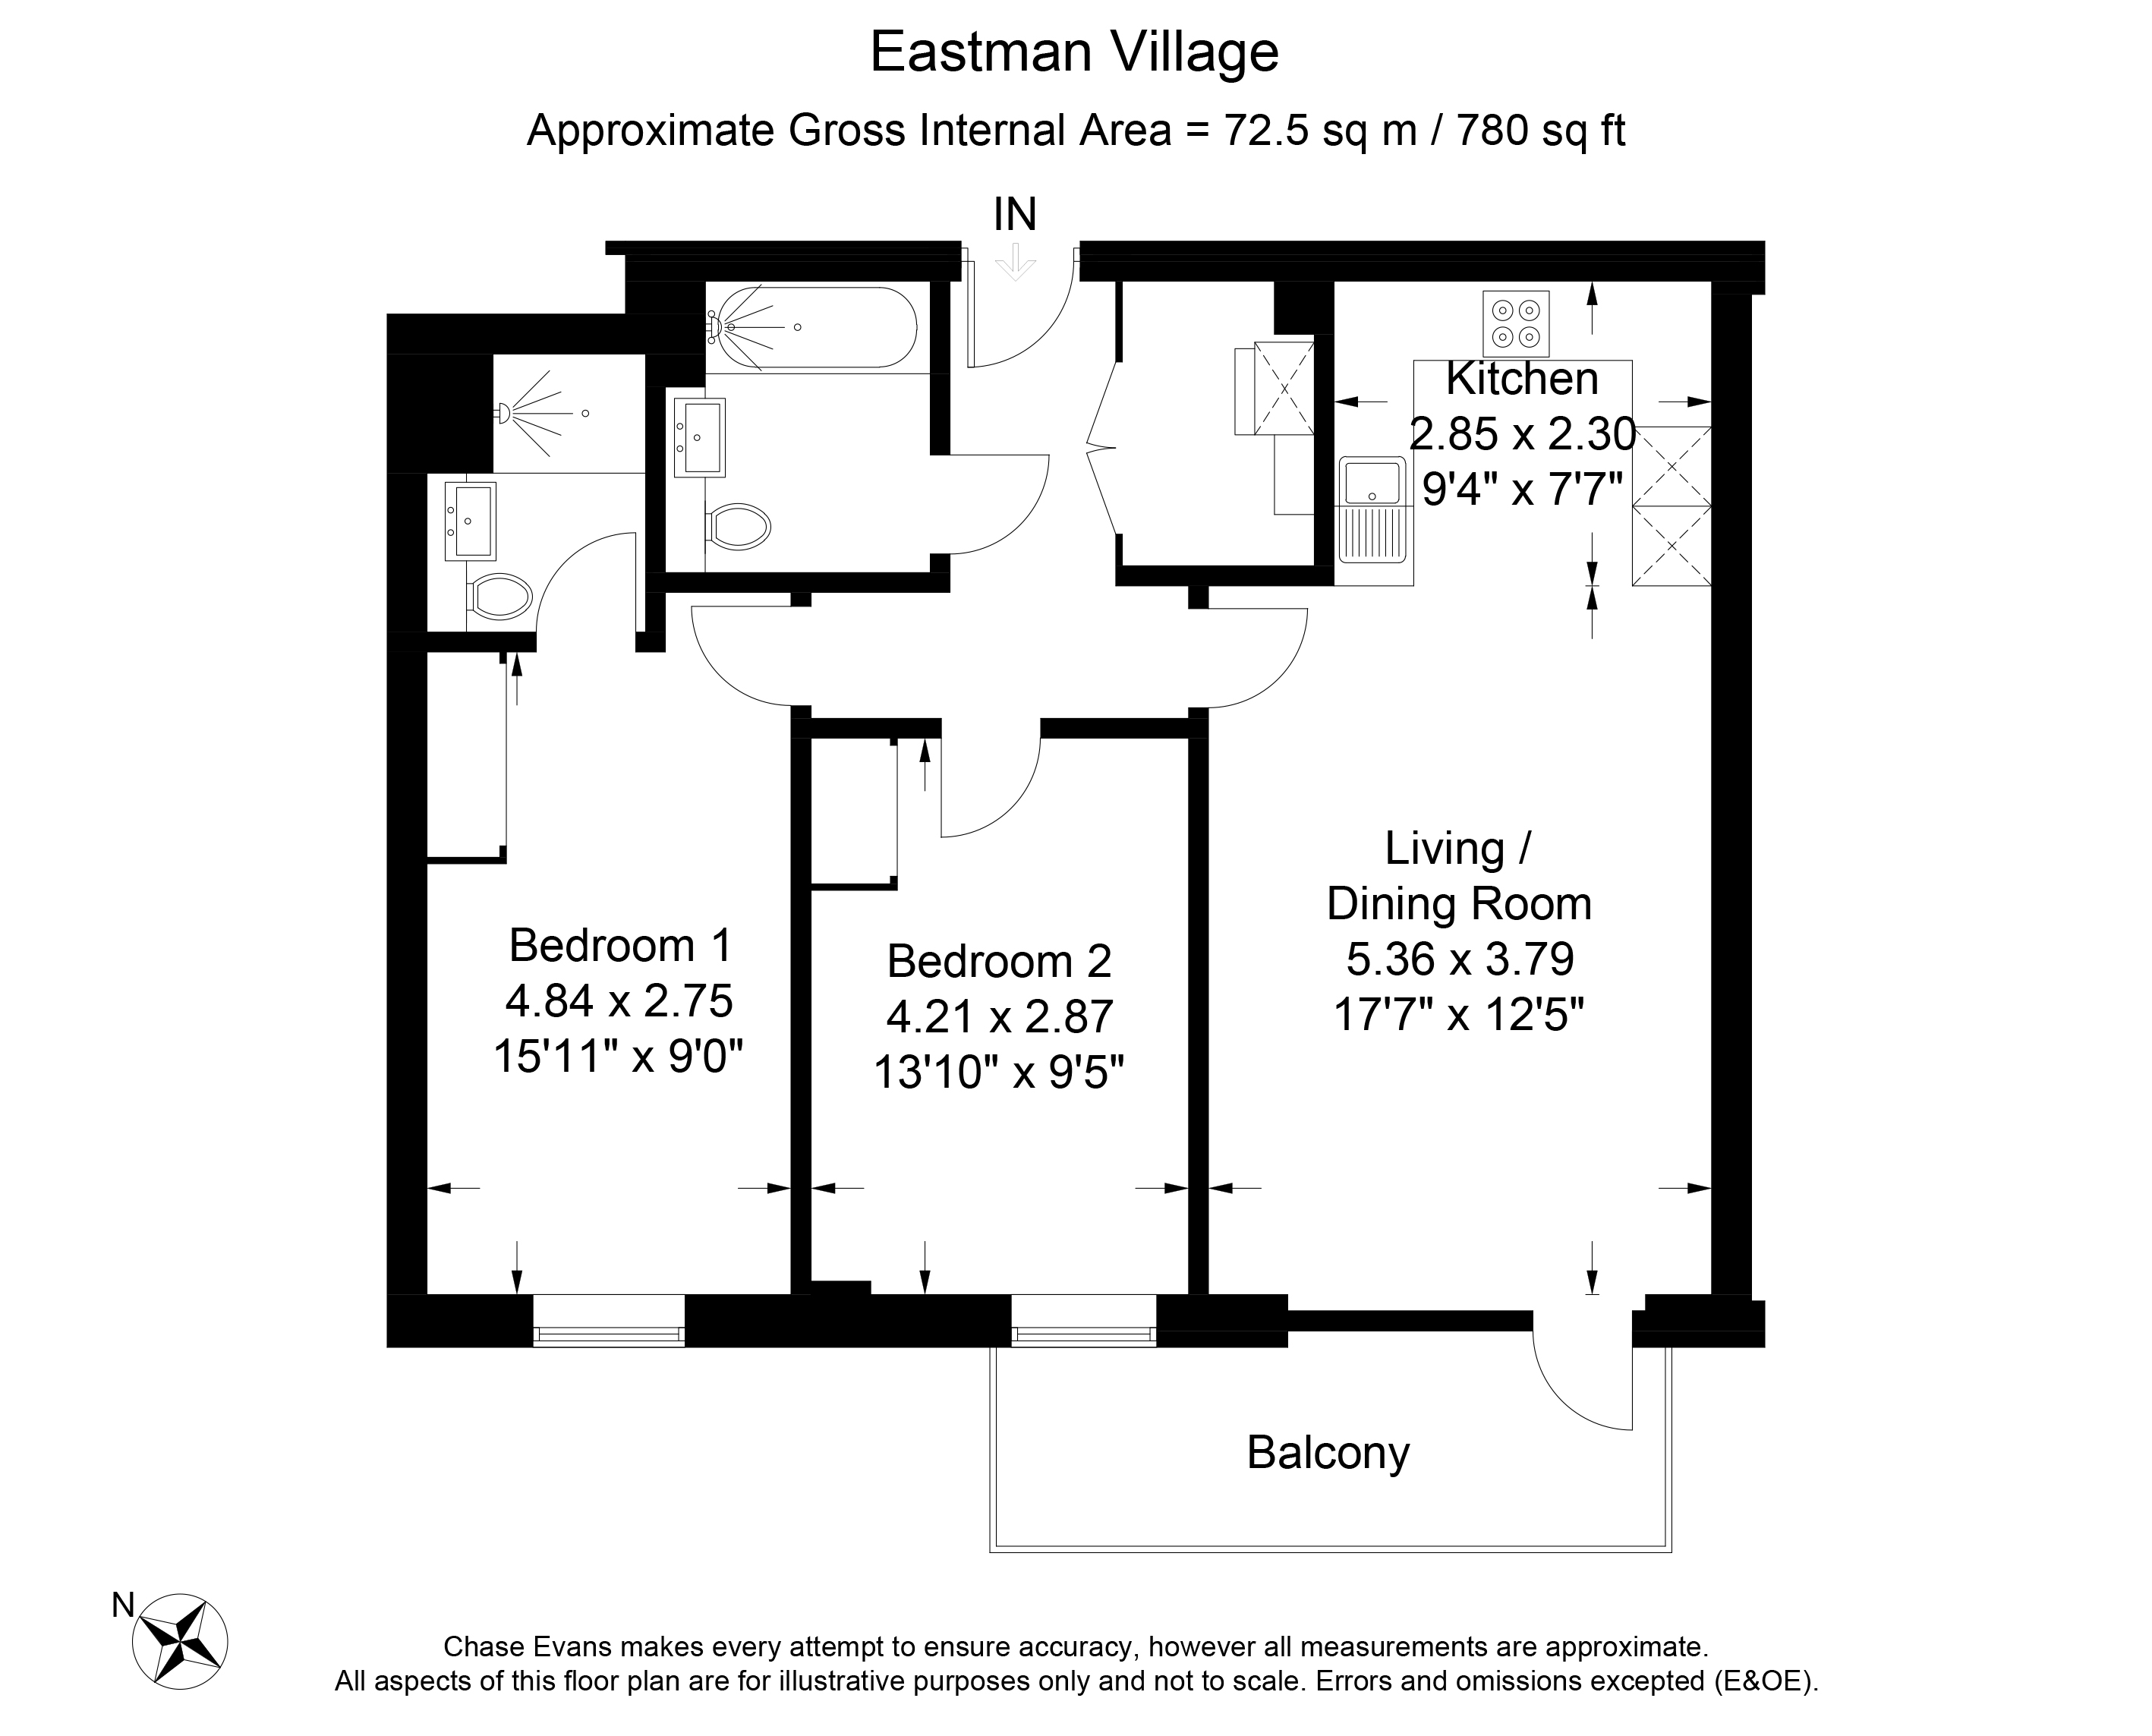 Eastman Village two bedroom apartment floor plan